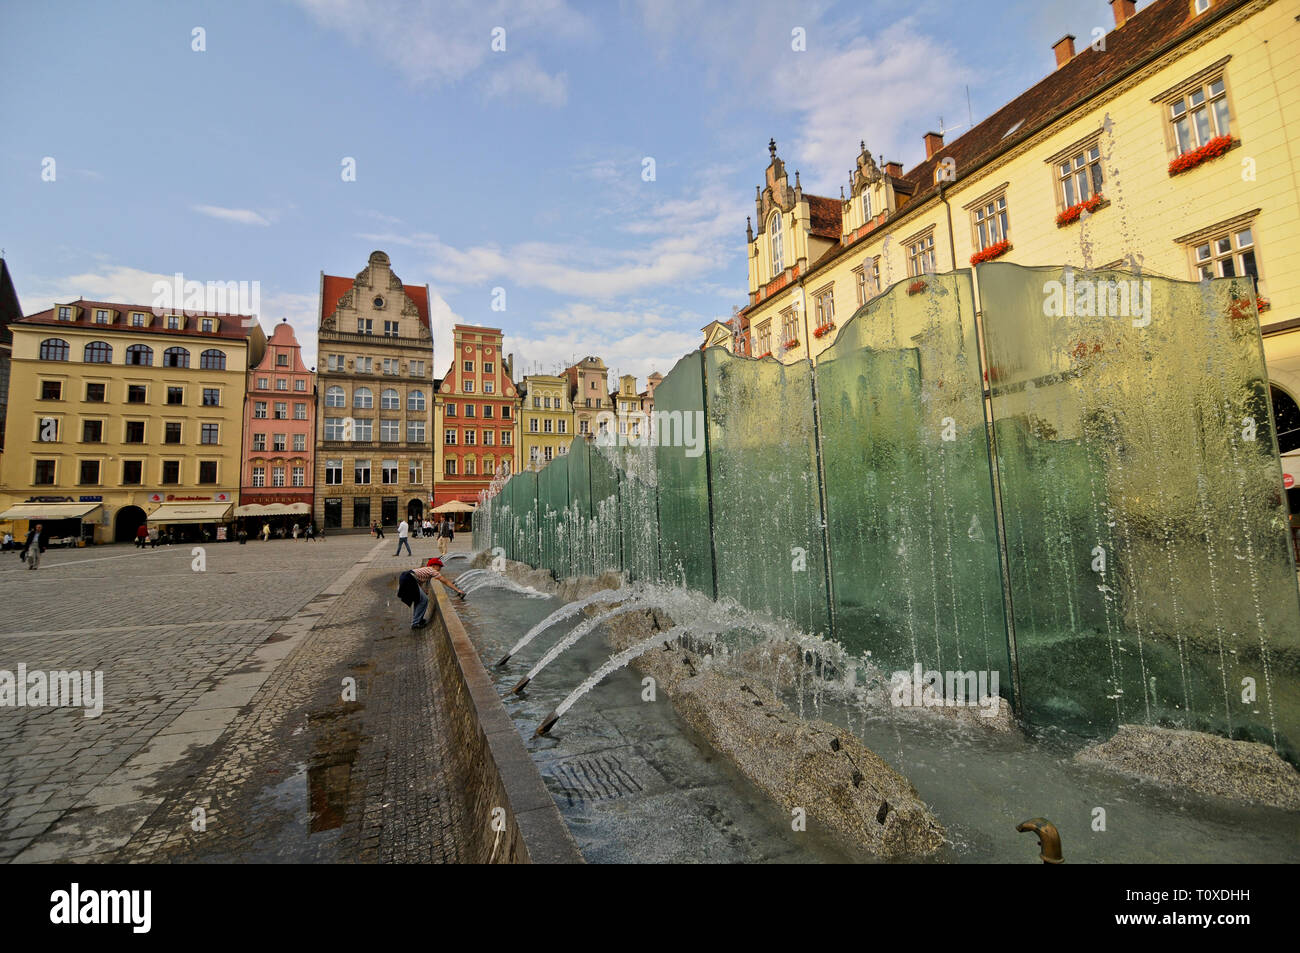 Zdrój Brunnen, Wroclaw, Polen Stockfoto